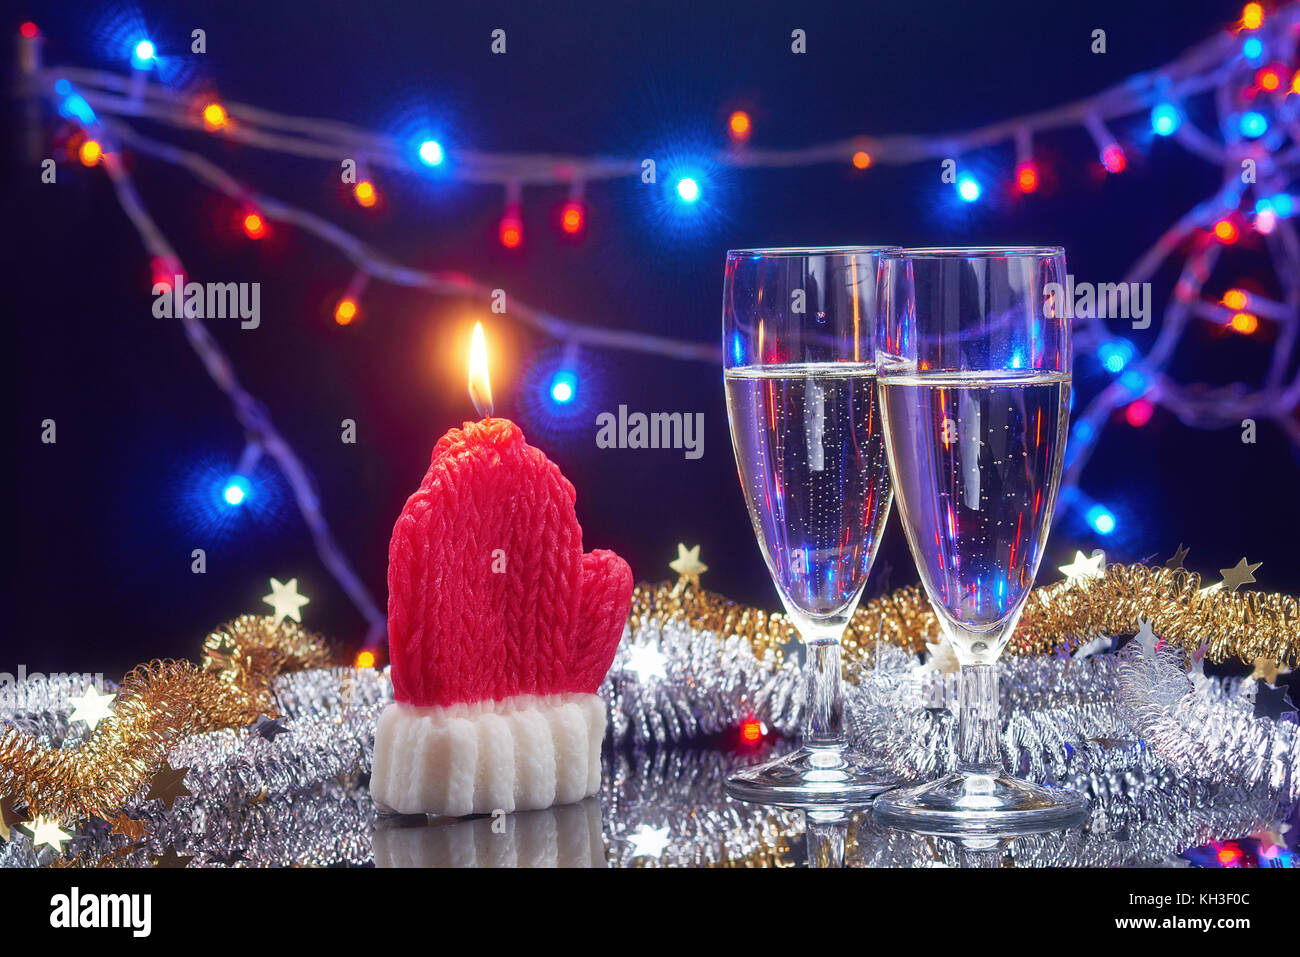 Neues Jahr Karte mit Weihnachten dekorative Kerze santa claus Handschuh und 2 Sektgläser über Girlande bokeh hellen Hintergrund Stockfoto